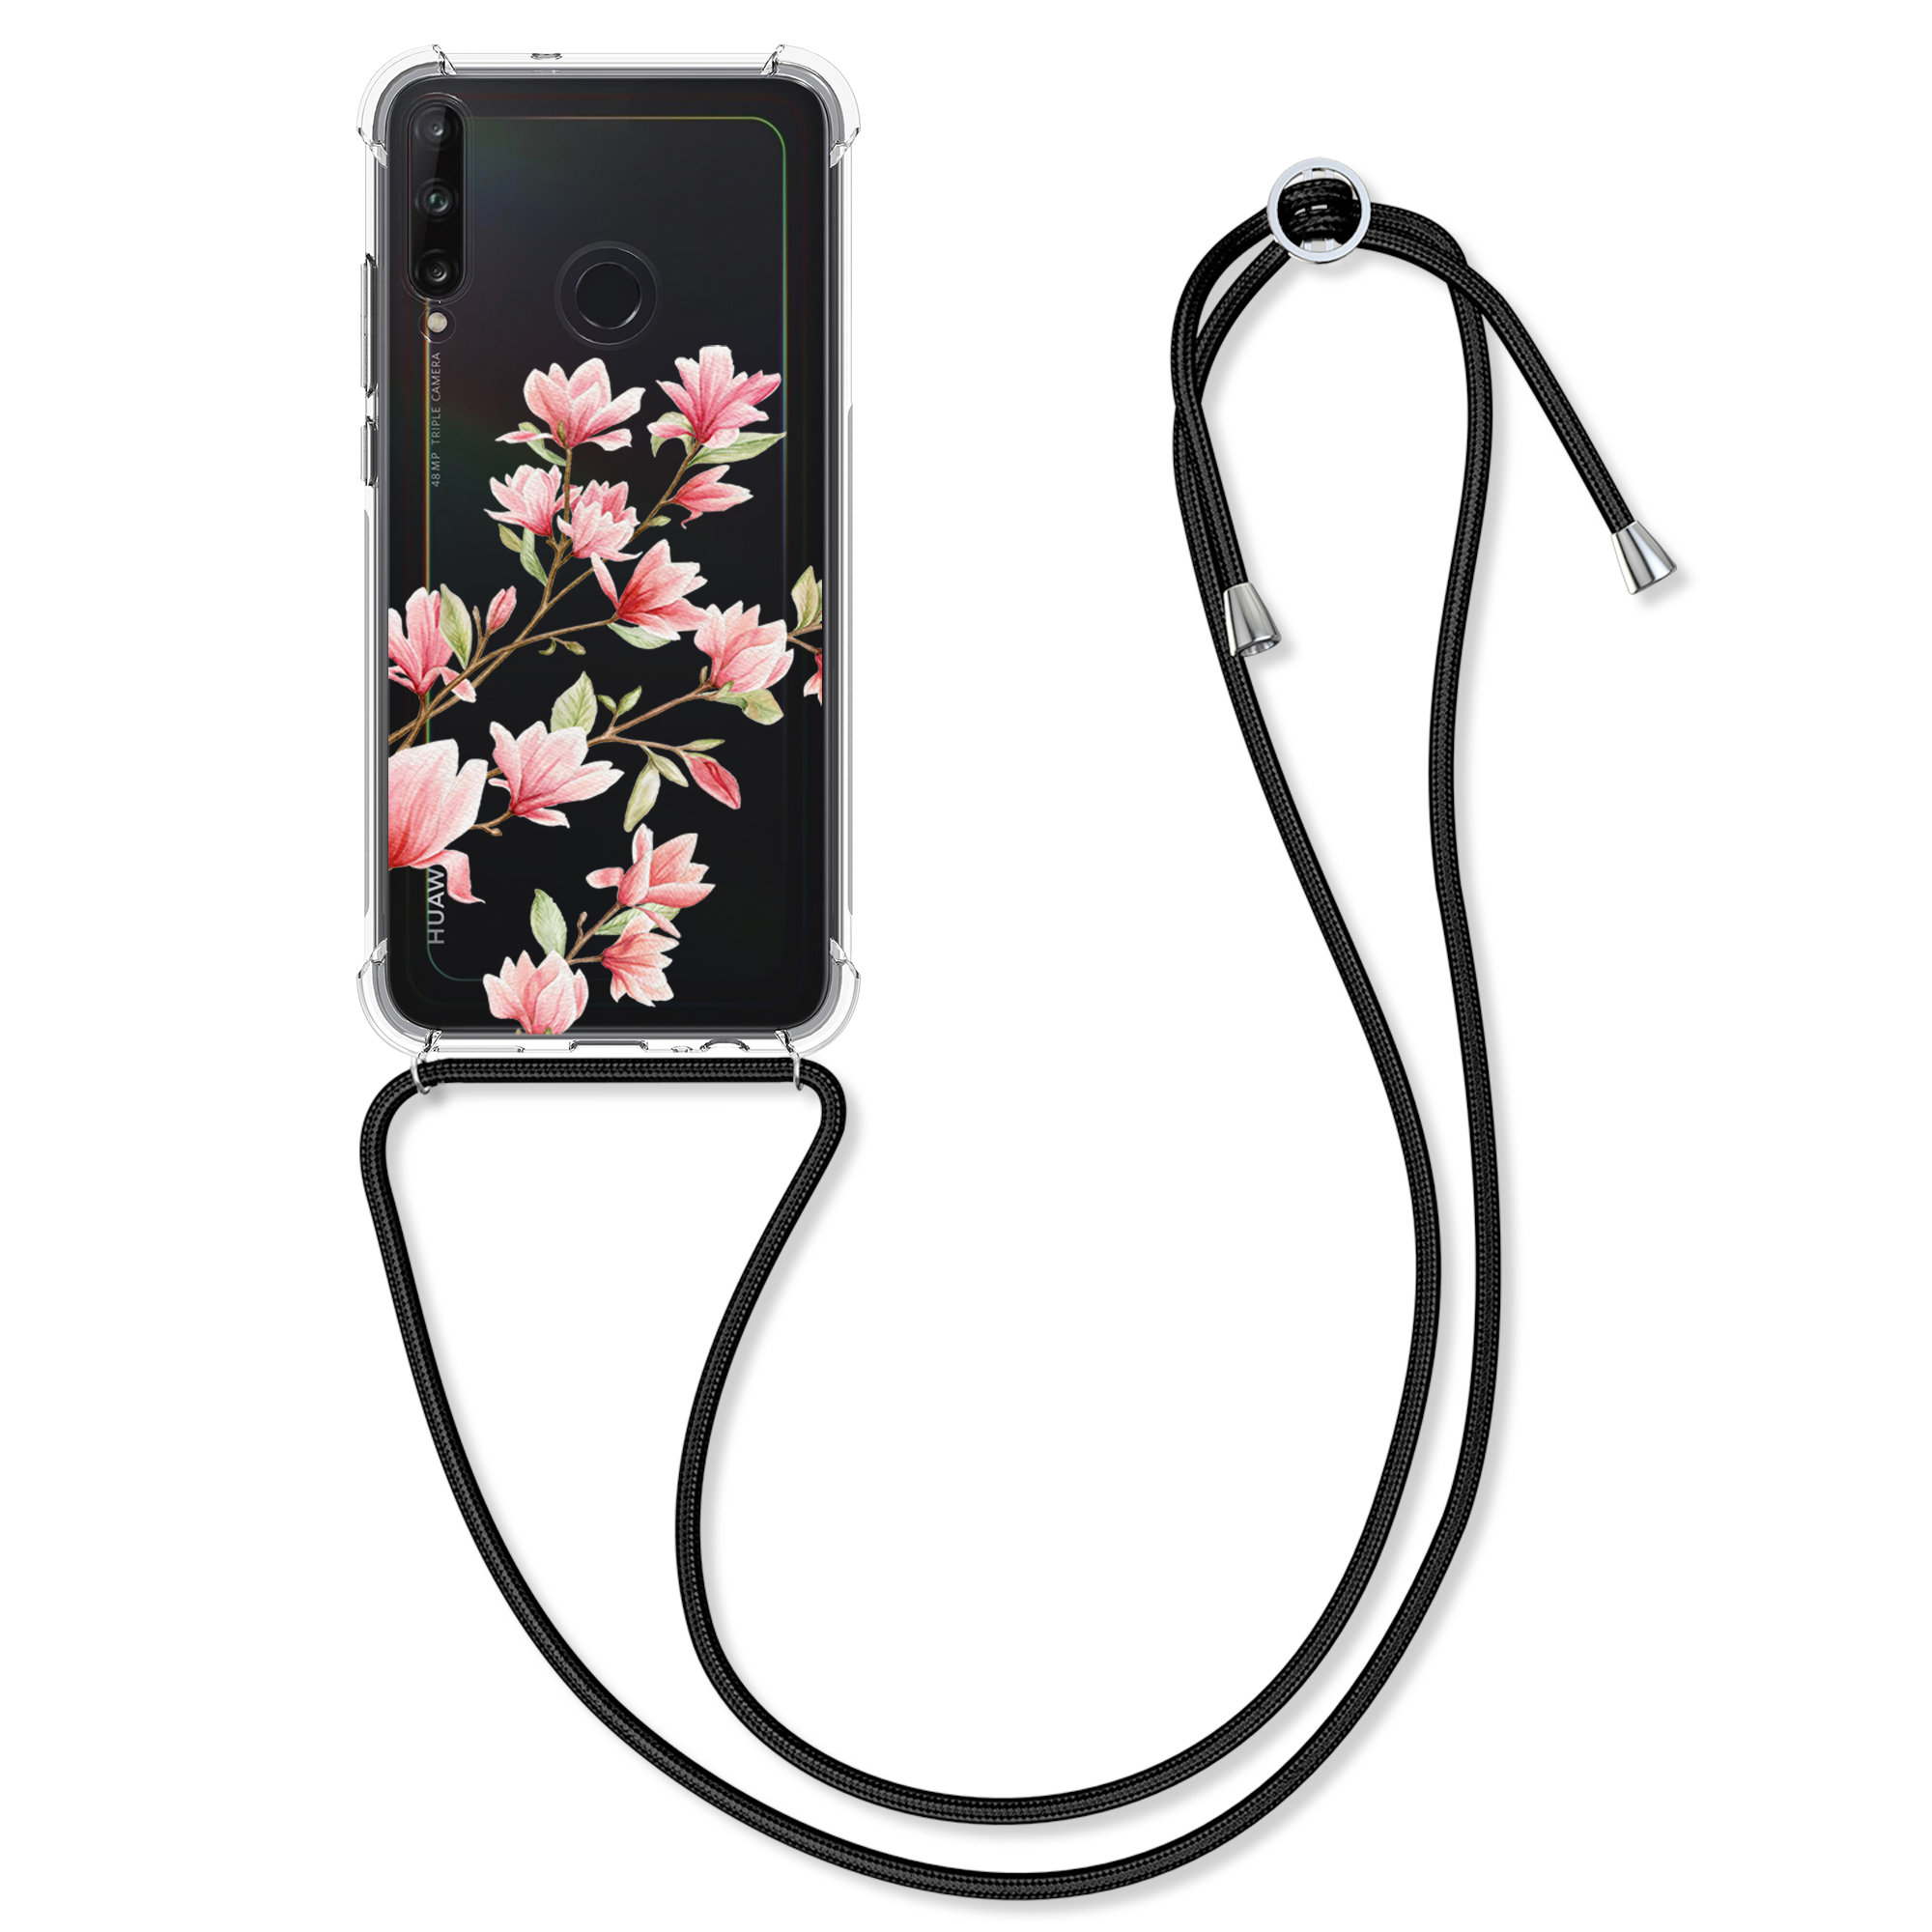 Silikonové pouzdro / obal na krk pro Huawei P40 Lite E s motivem květů magnolie